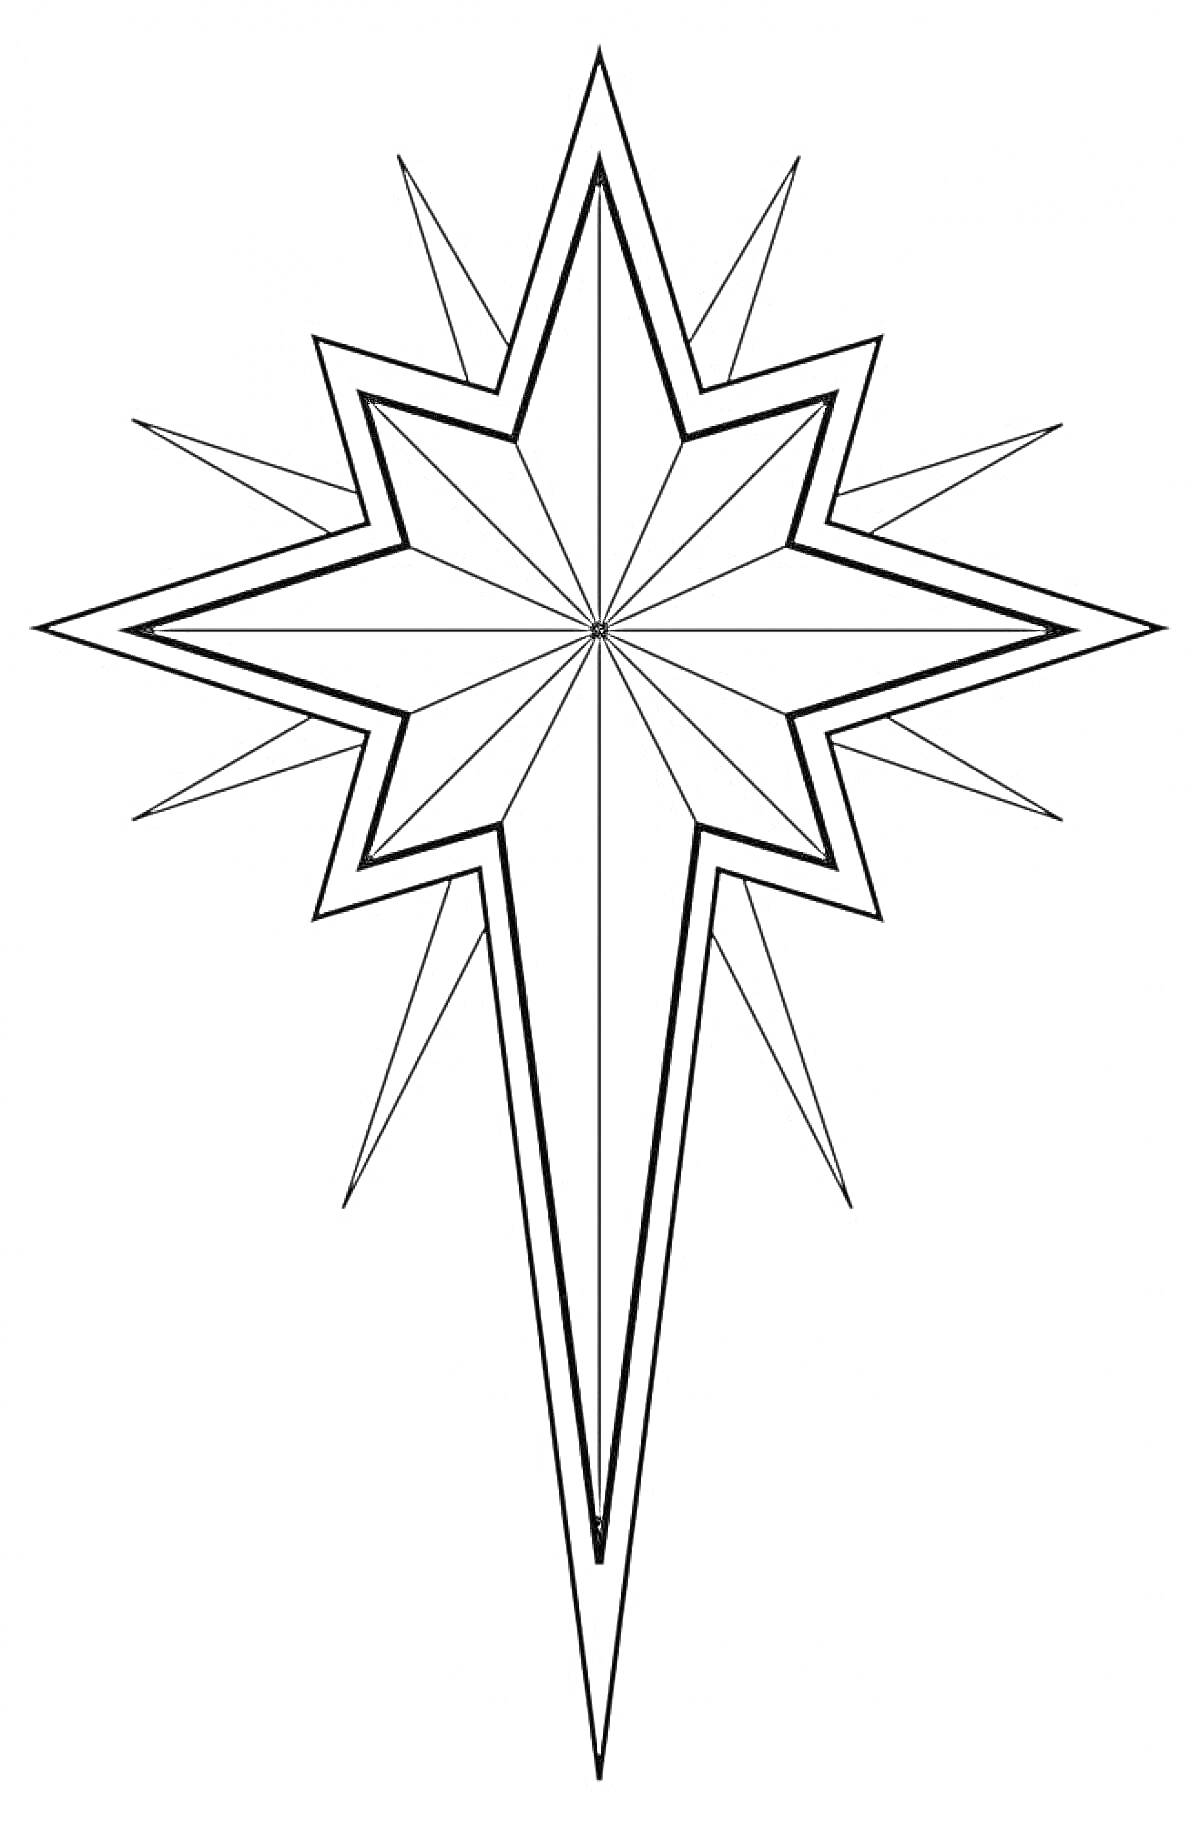 Раскраска Рождественская звезда с лучами и внутренним рисунком